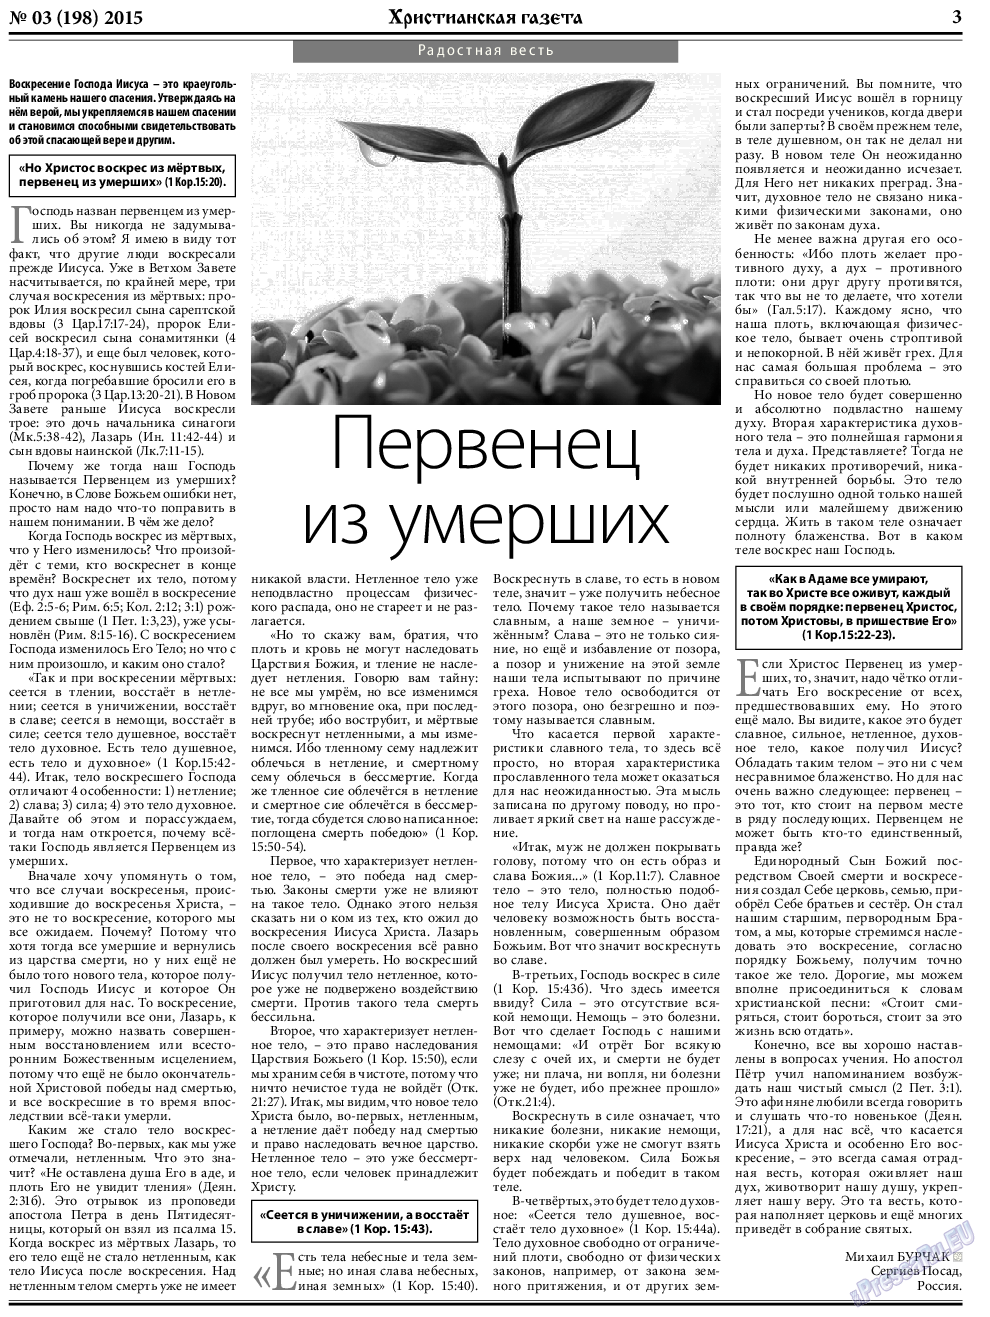 Христианская газета, газета. 2015 №3 стр.3